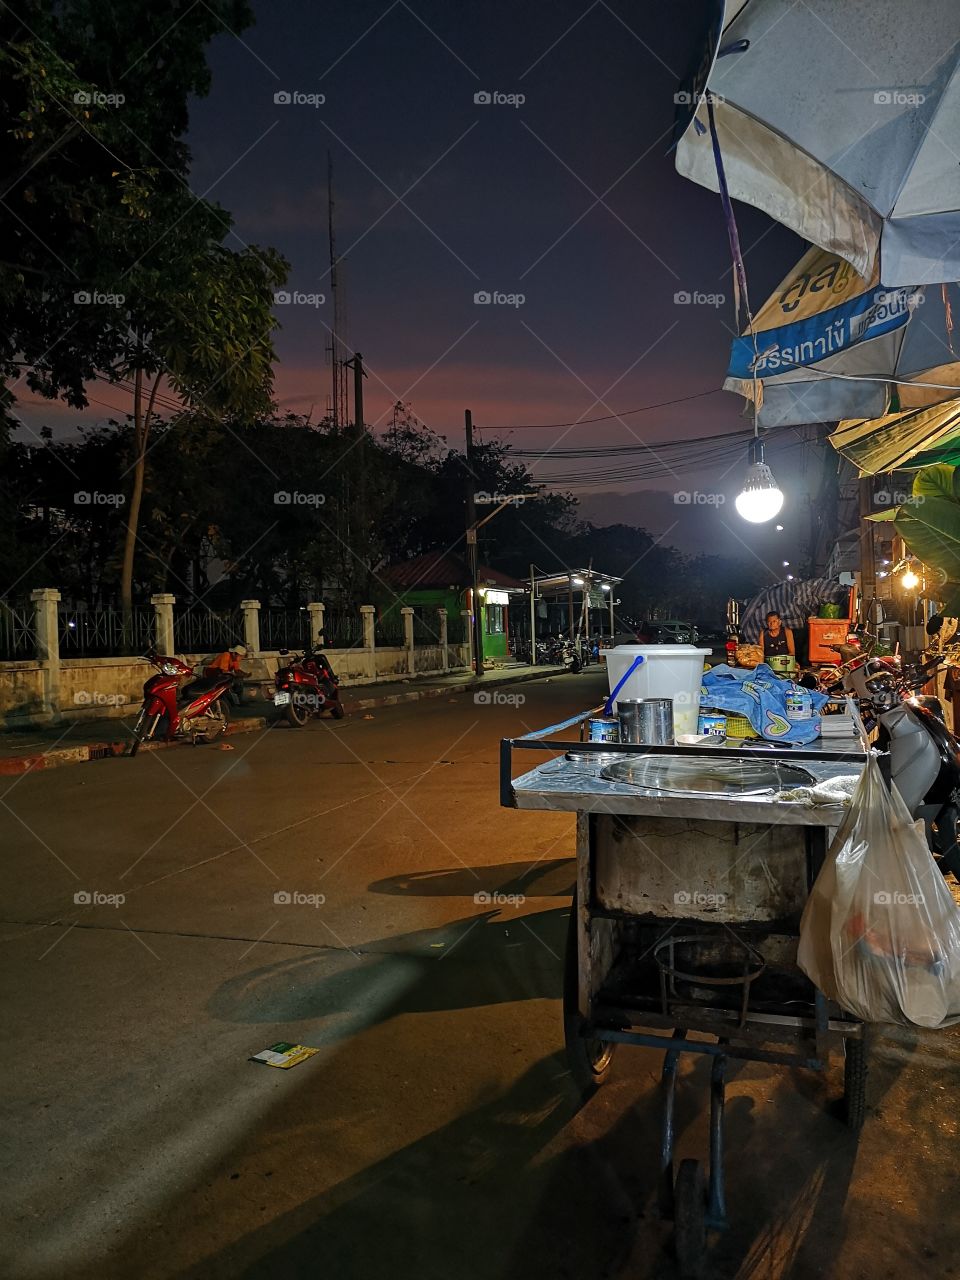 "Roo tee" Street food in thailand.